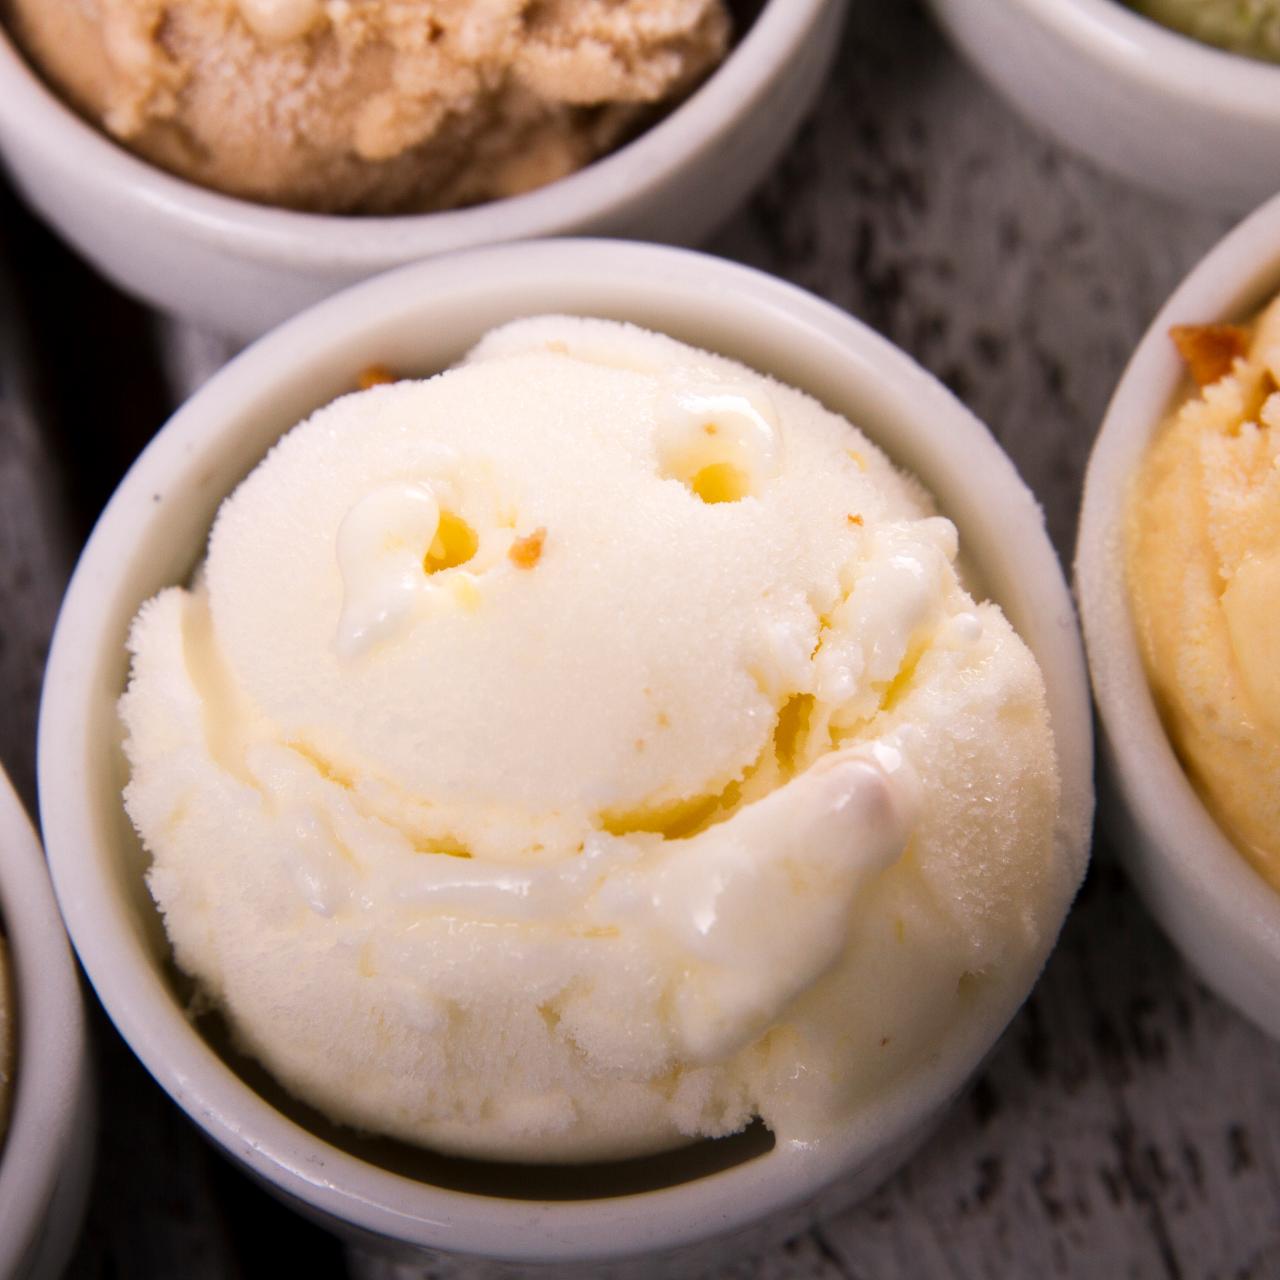 How To Start Your Own Ice Cream Shop - Frozen Dessert Supplies